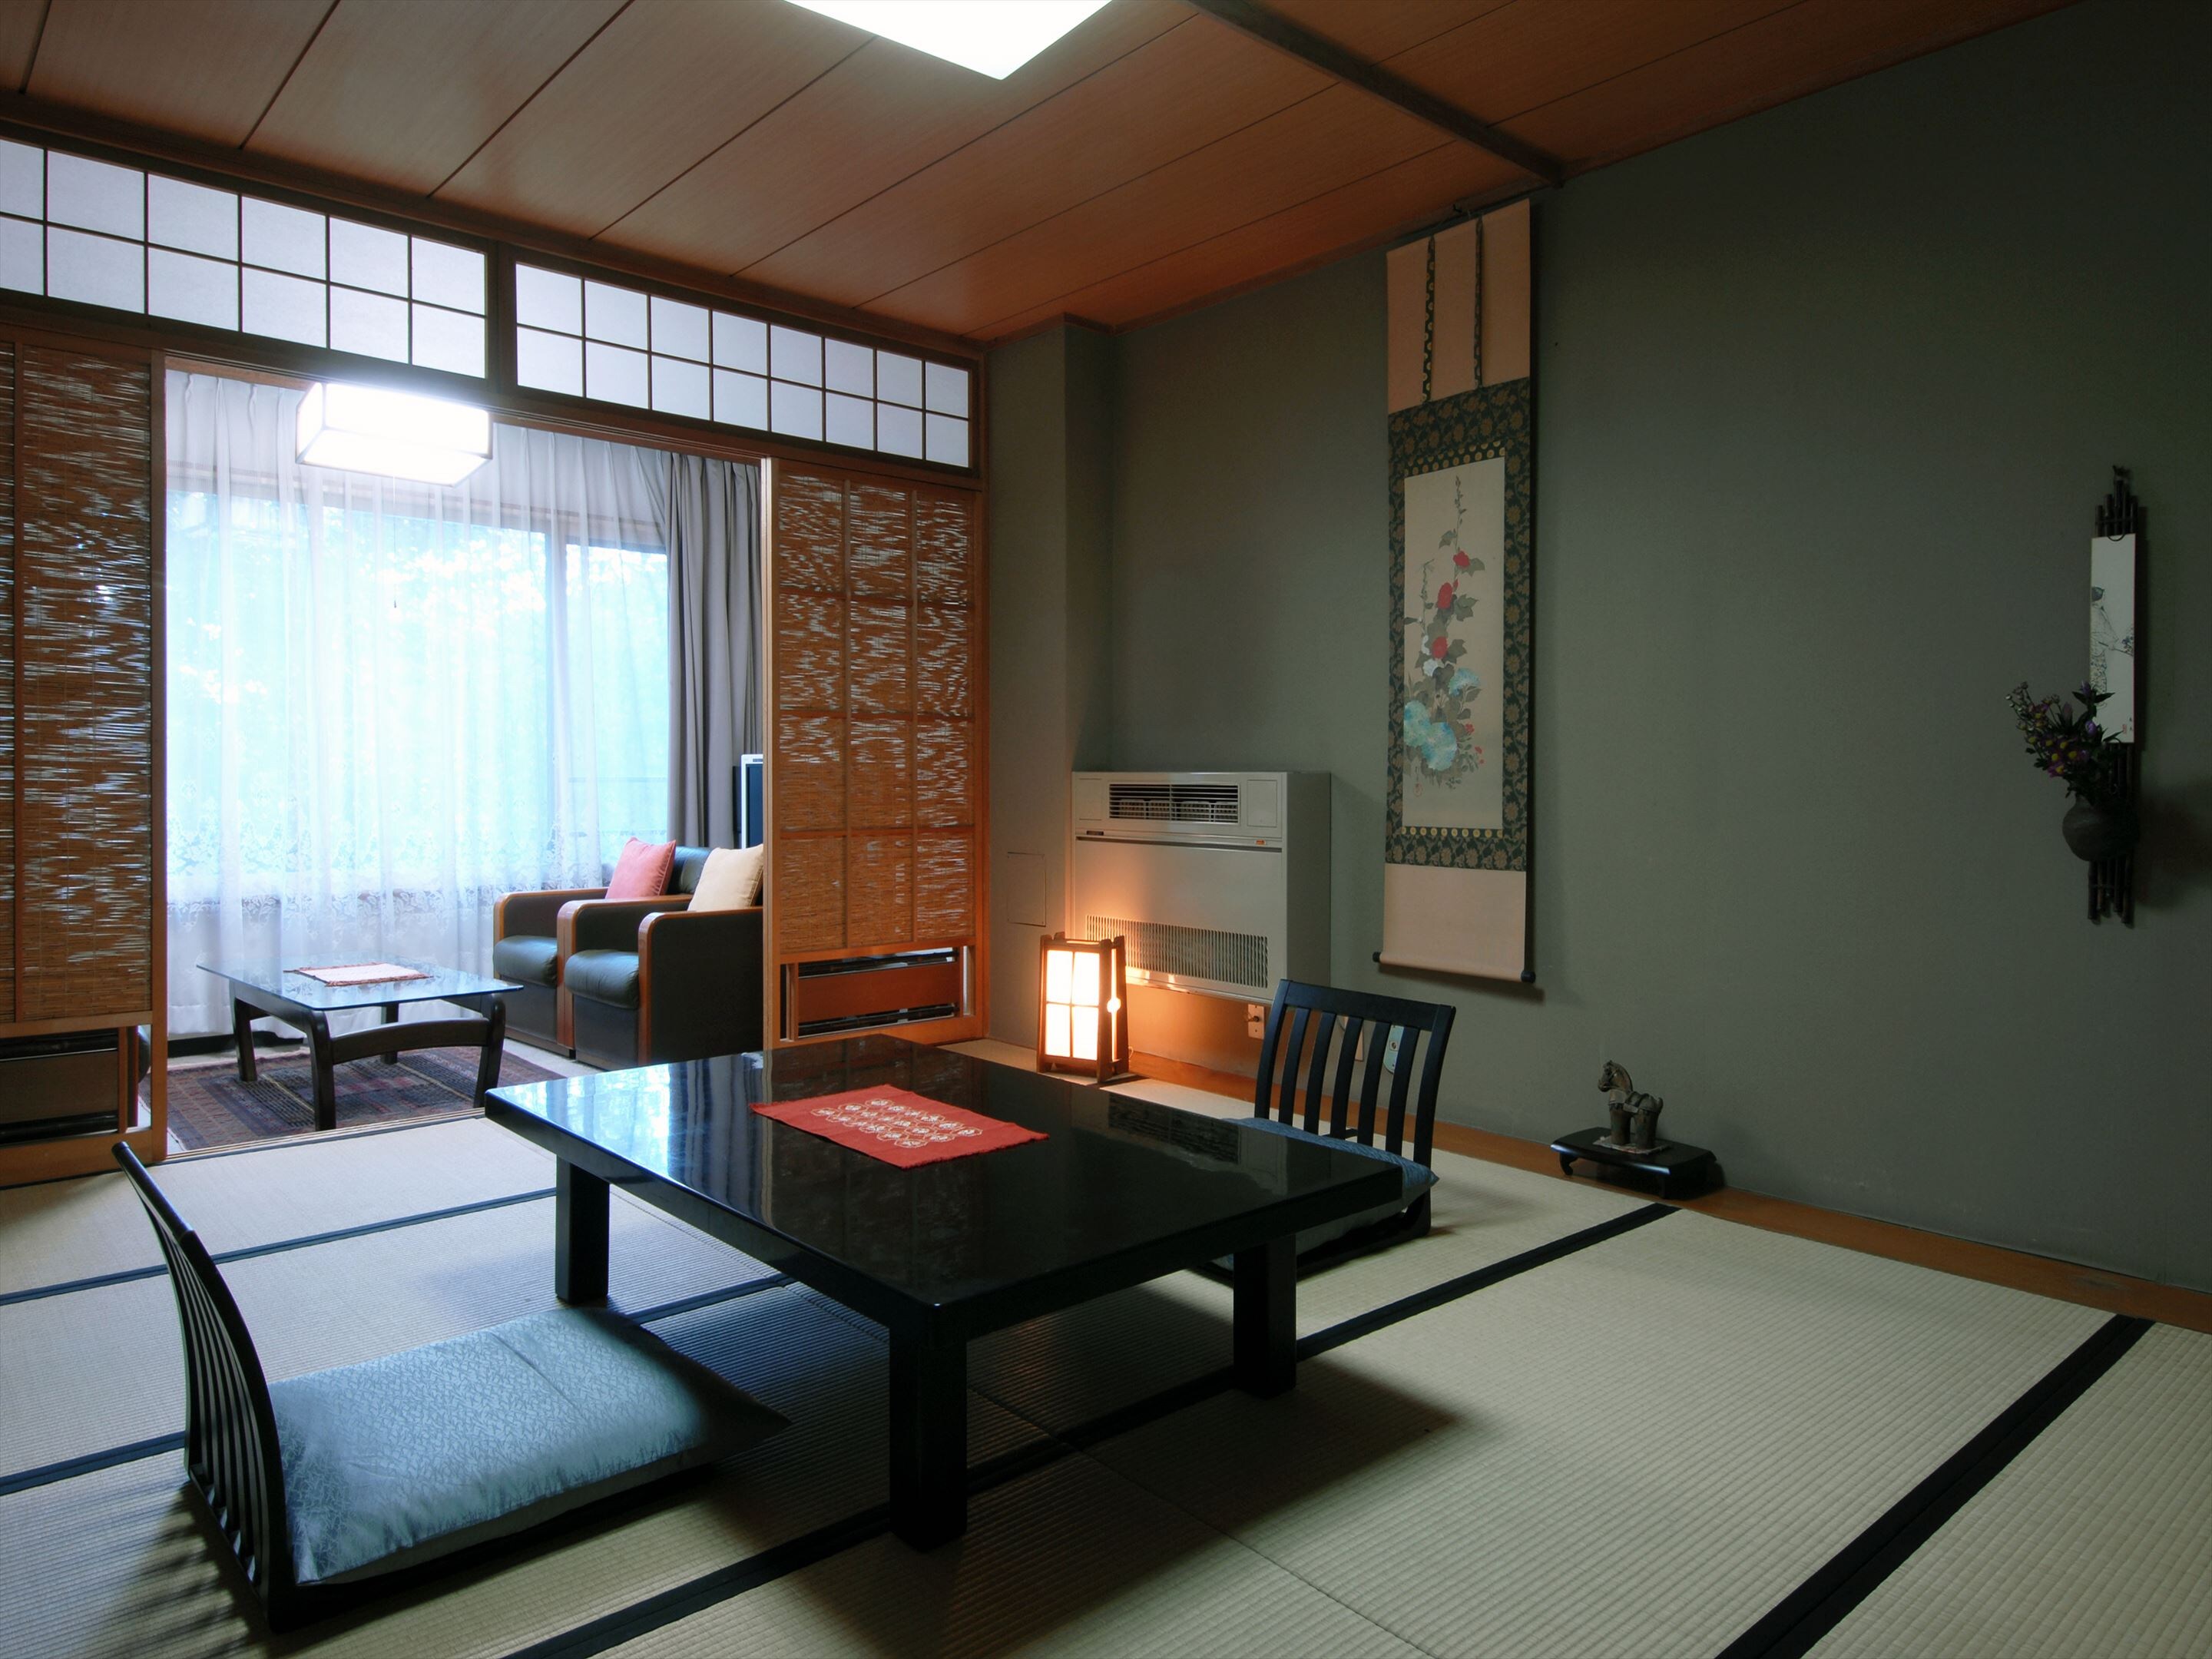 ห้องสไตล์ญี่ปุ่น 14 tatami เหมาะสำหรับผู้ที่ต้องการพักผ่อนด้วยกัน!